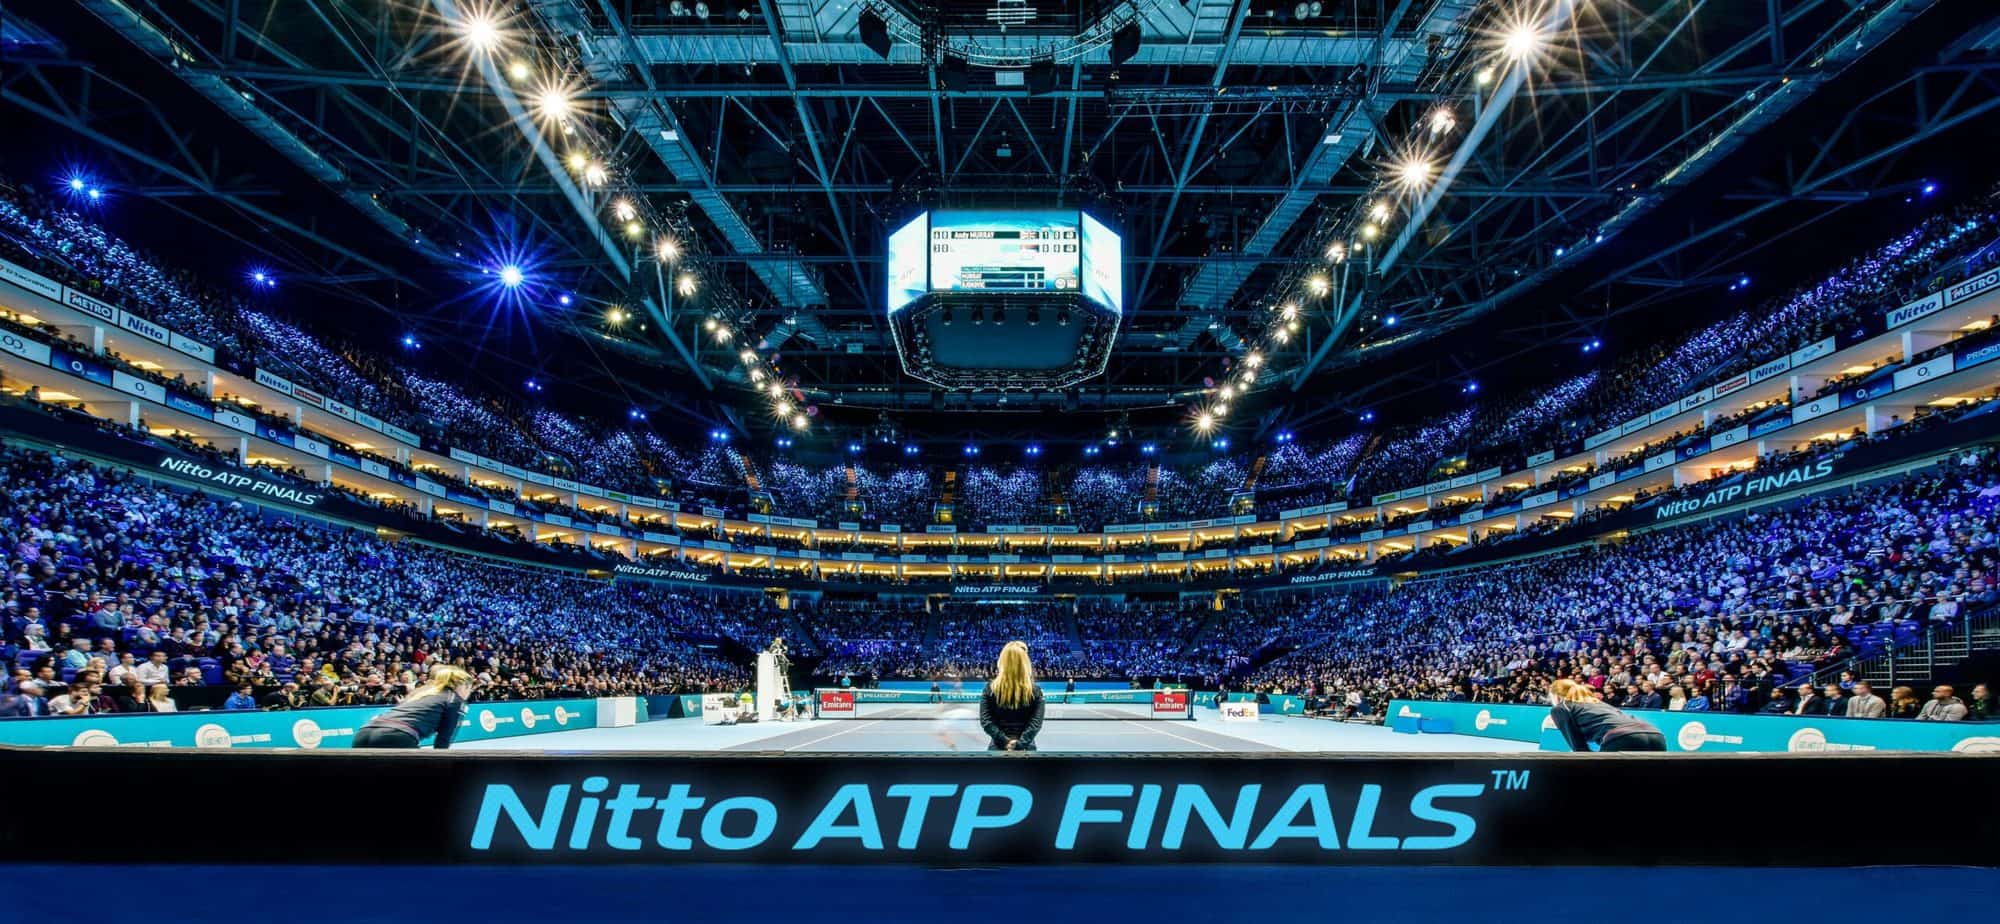 Nitto ATP Finals 2021 biglietti Online per il torneo di tennis maschile a Torino